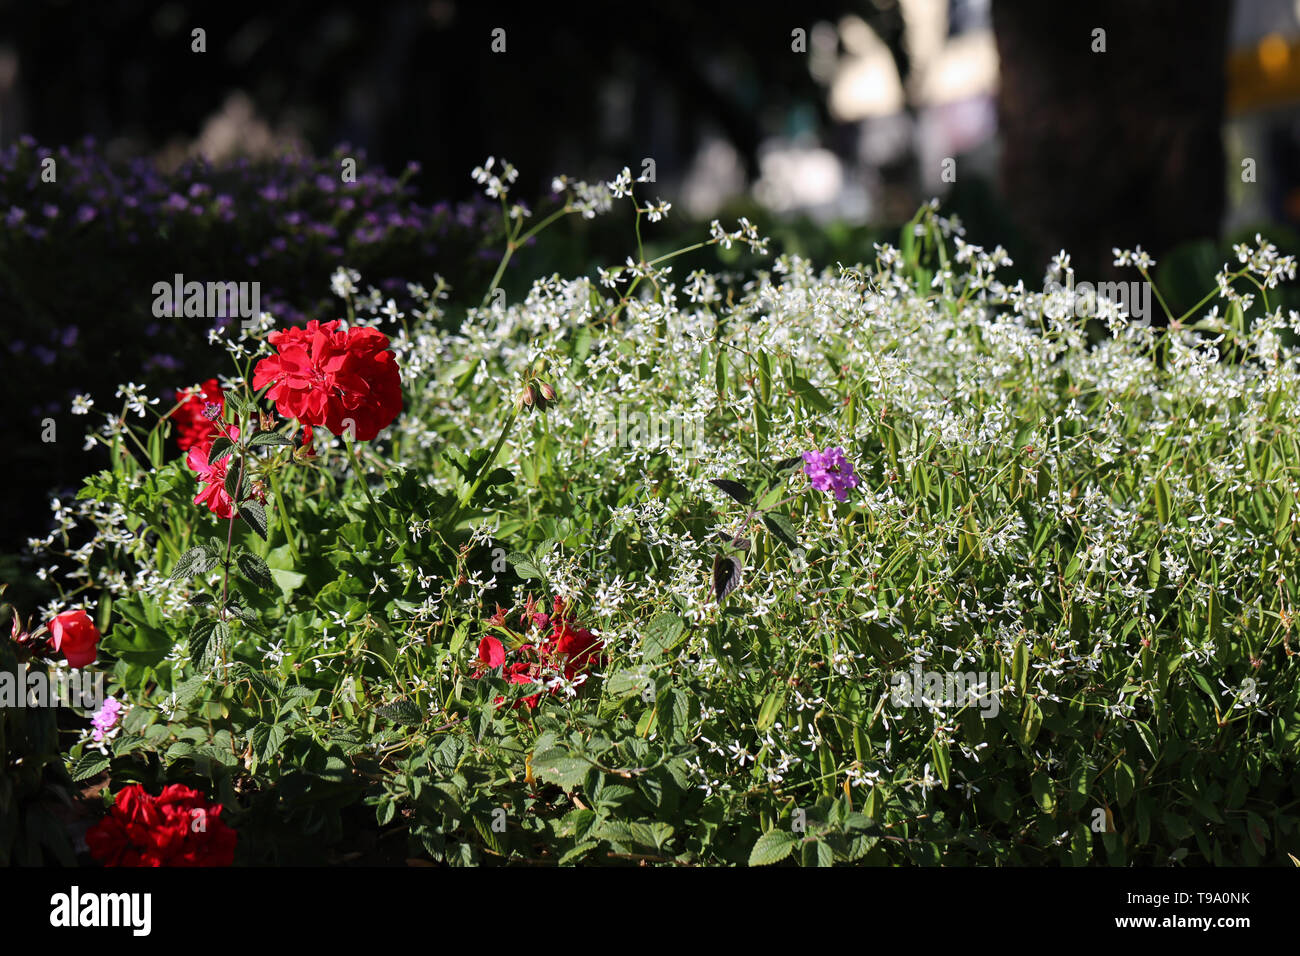 Splendido colore rosso brillante fiori e piccoli fiori bianchi, e alcune foglie con un morbido sfondo scuro. Fotografato durante una soleggiata giornata di primavera in Madeira. Foto Stock